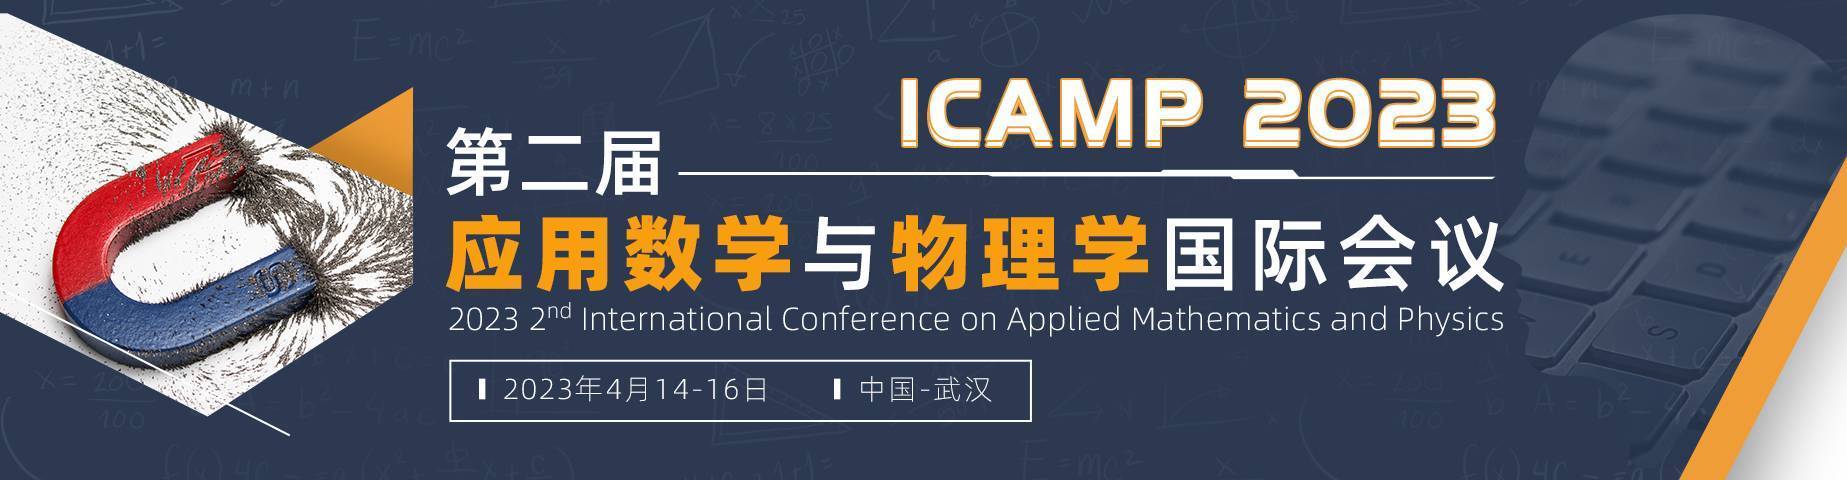 第二屆應用數學與物理學國際會議(ICAMP 2023)